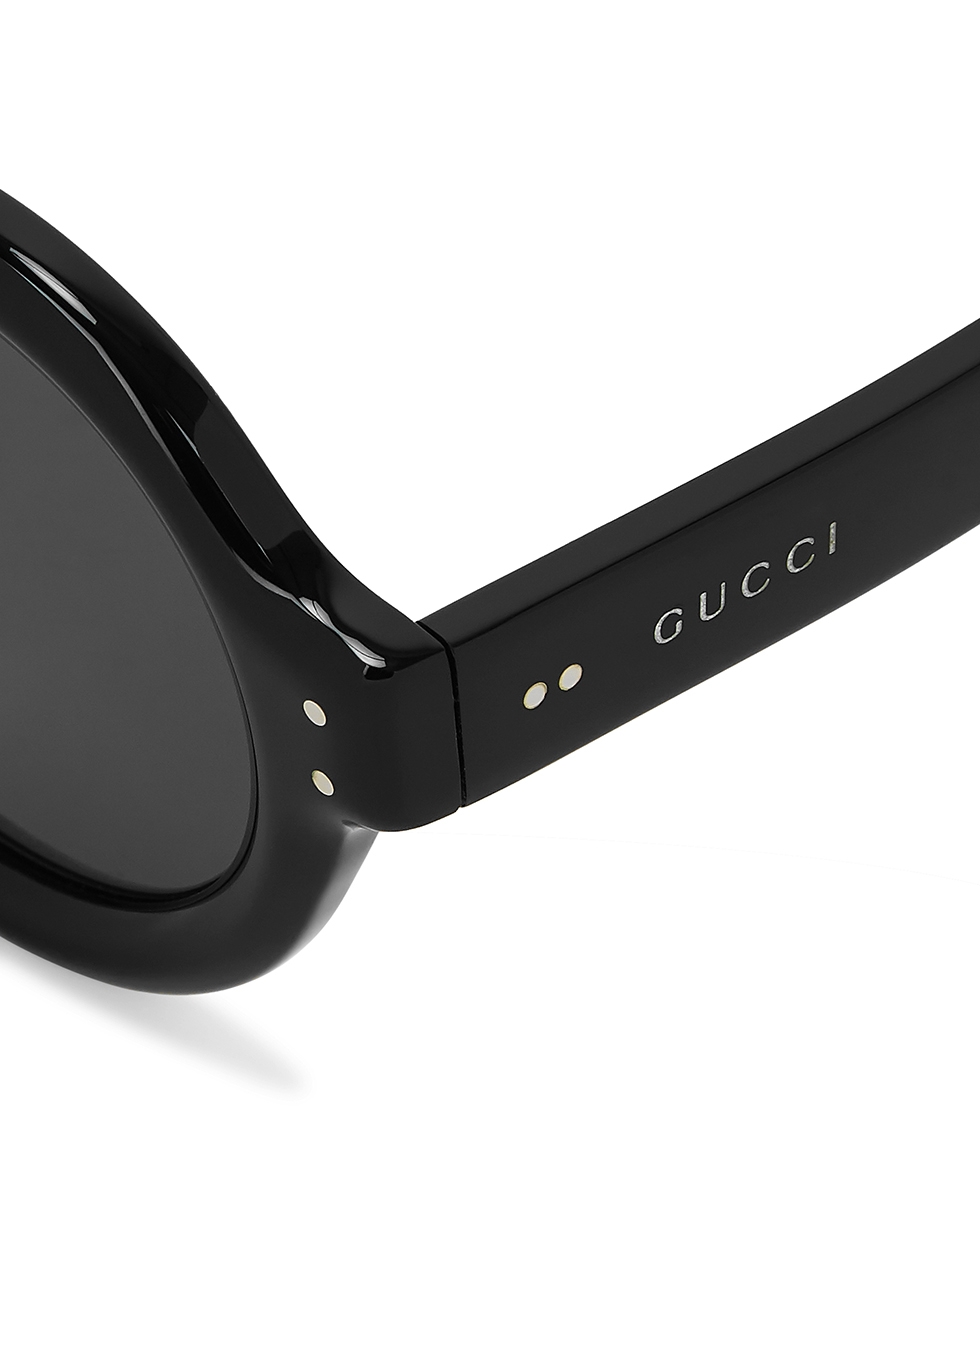 gucci sunglasses round black